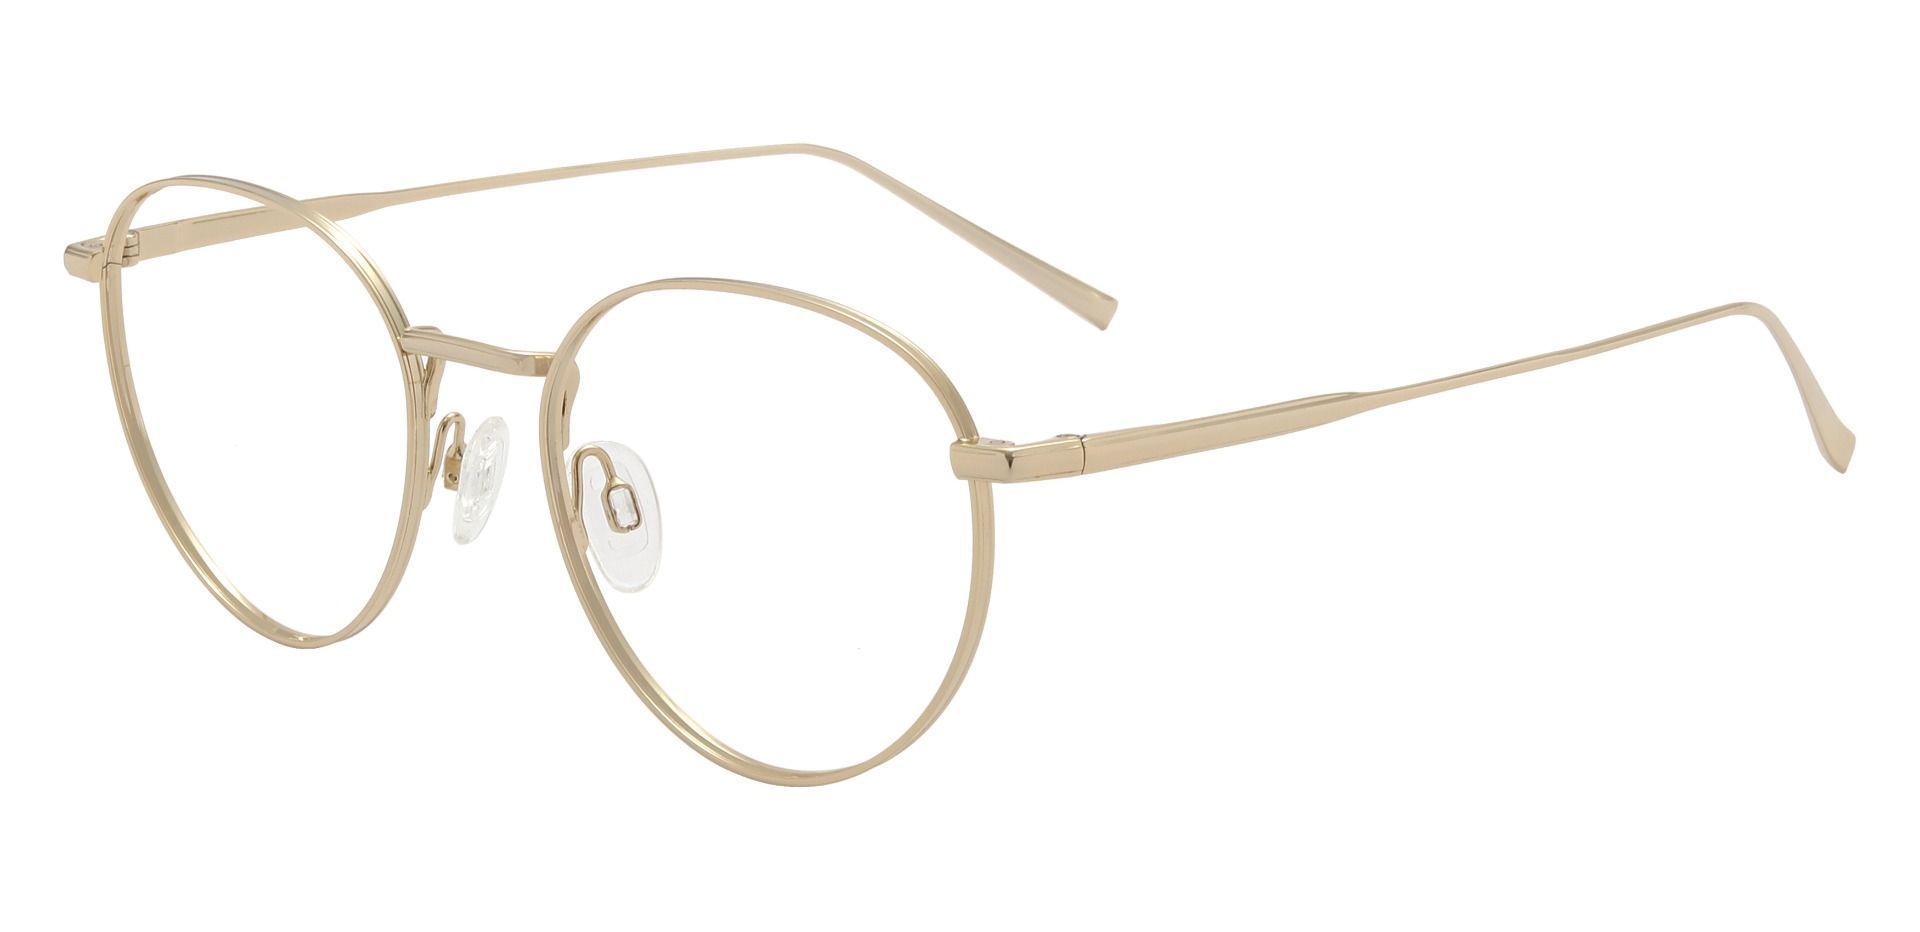 Portman Round Prescription Glasses - Gold